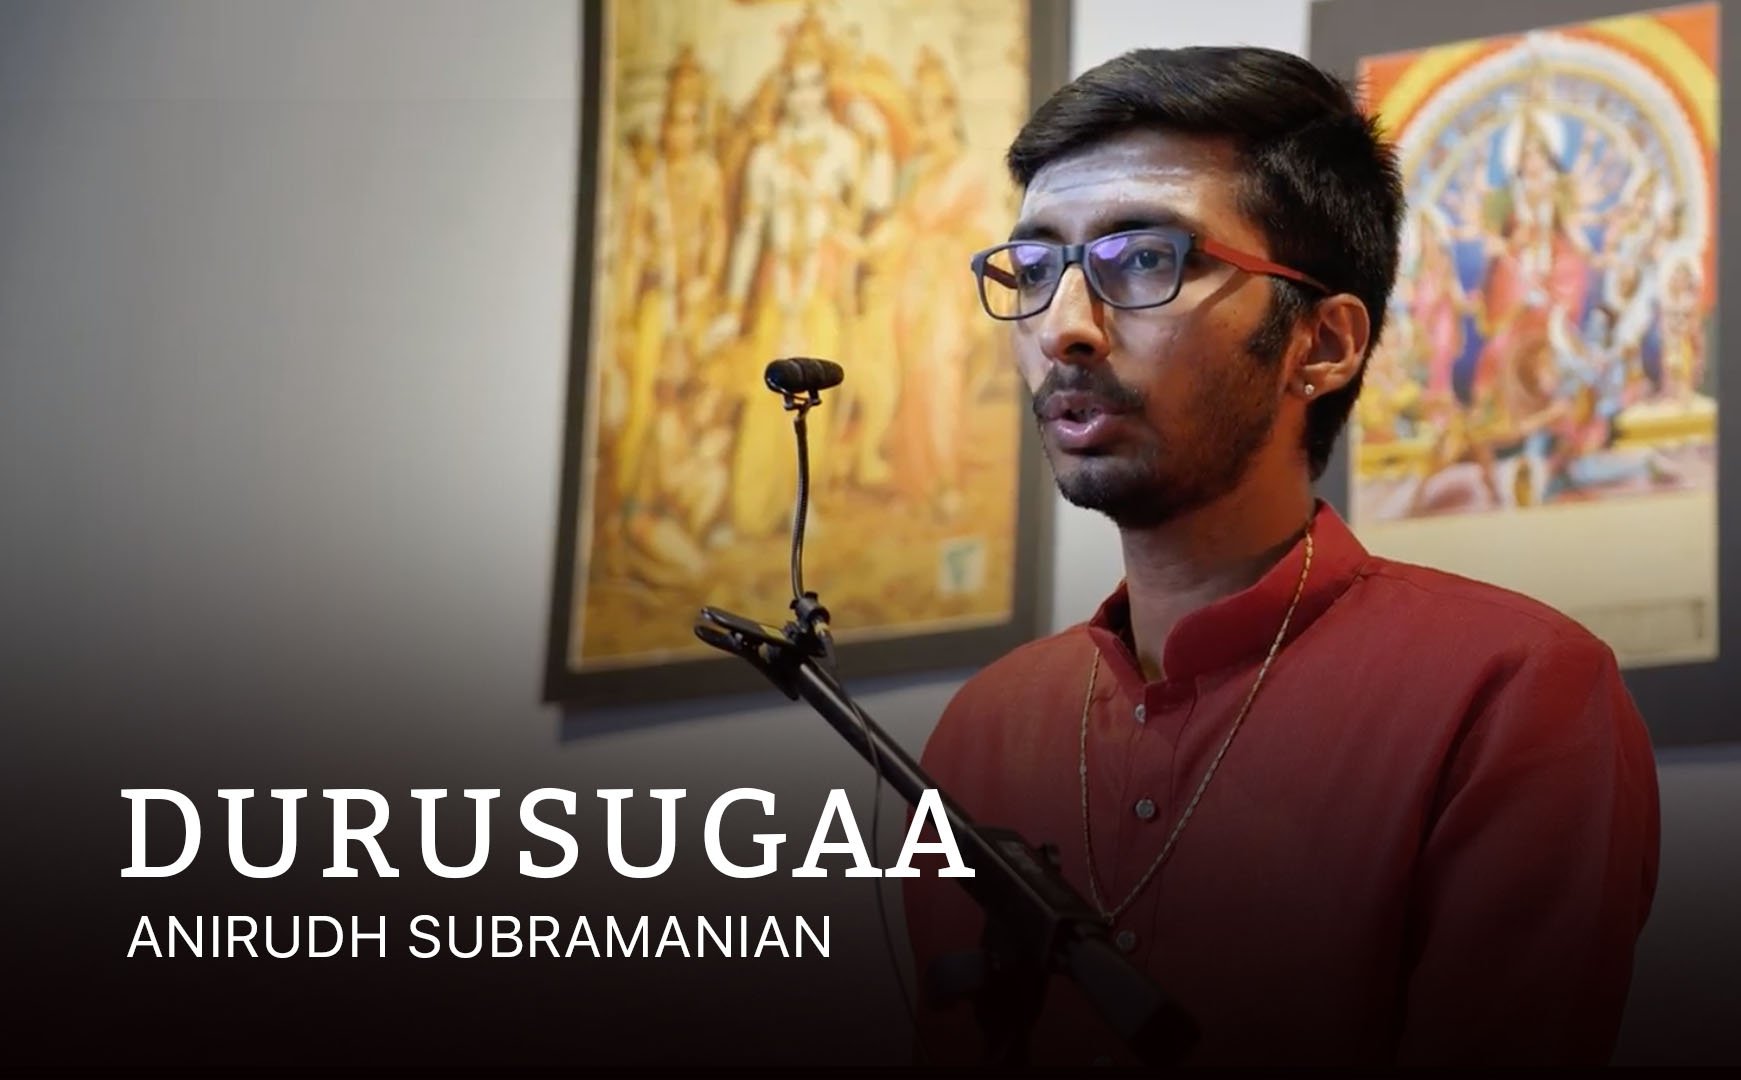 9 of a Kind 2022 - Anirudh Subramanian - Durusugaa